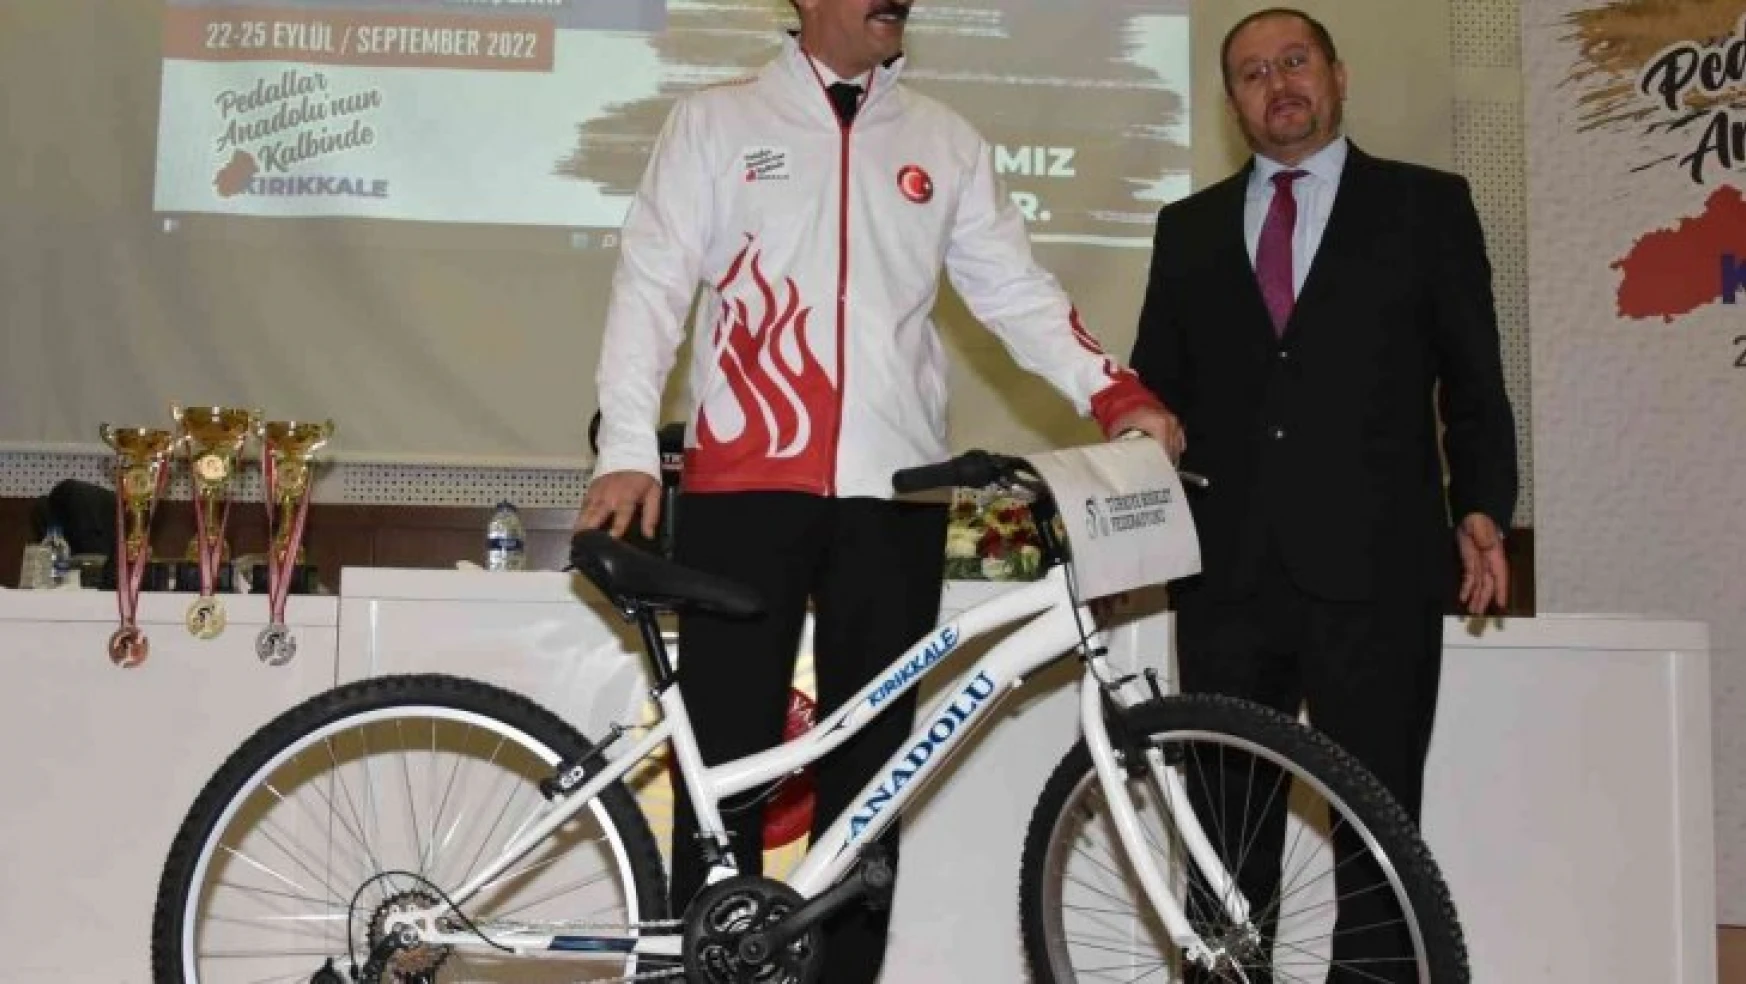 Türkiye Bisiklet Şampiyonası 7. Etap Puanlı Yol Yarışları Kırıkkale'de yapılacak